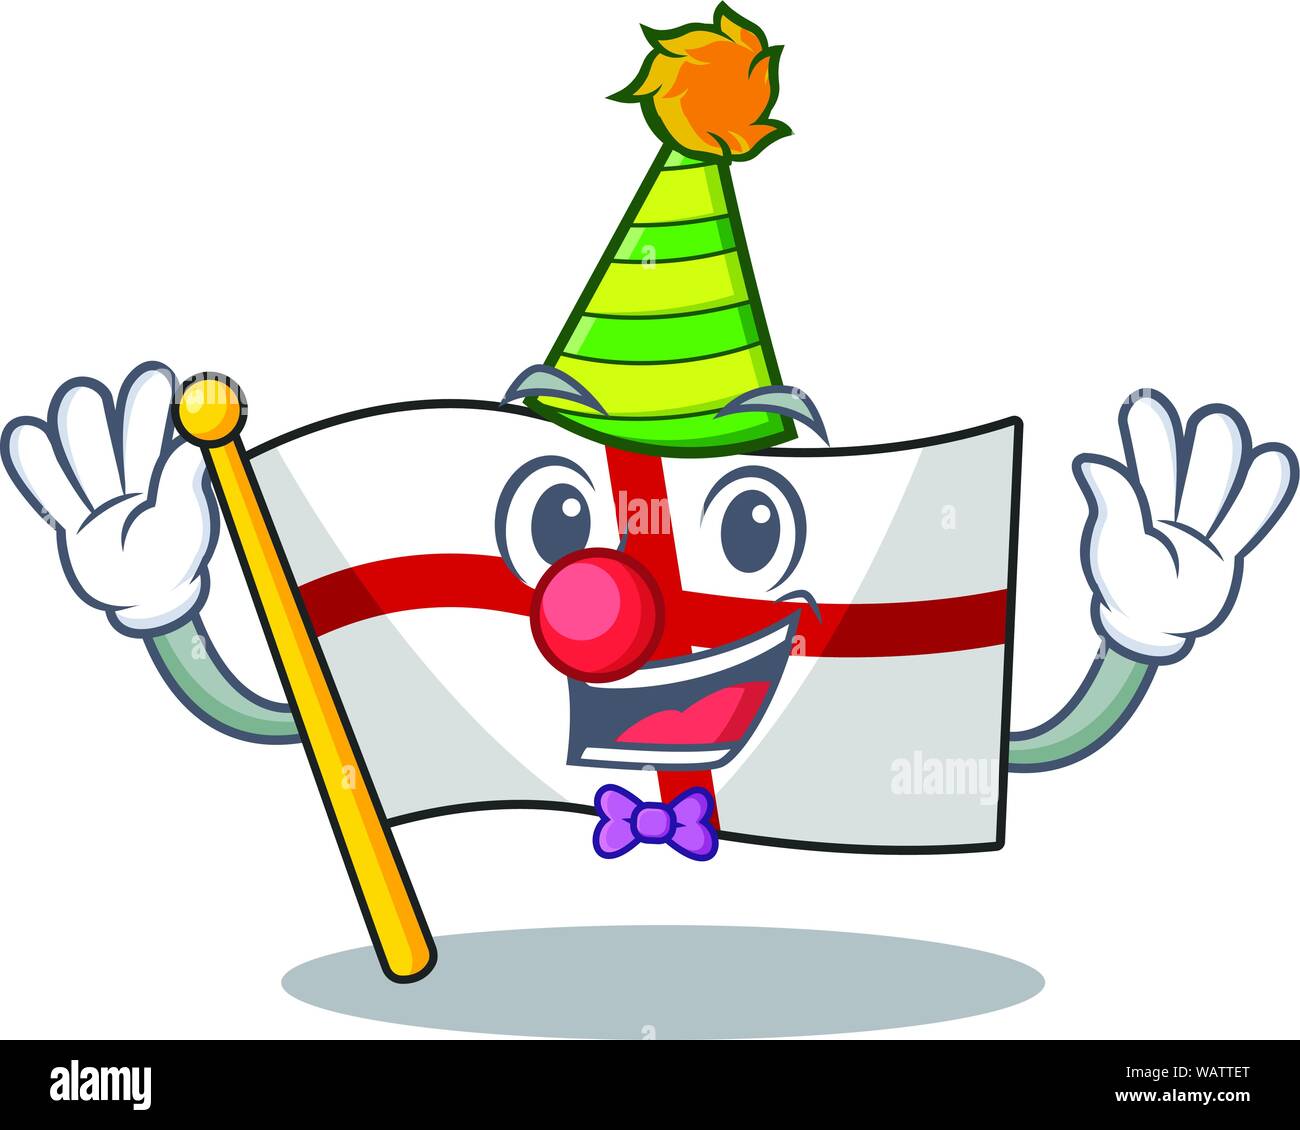 Clown flag england hoisted on character pole Stock Vector